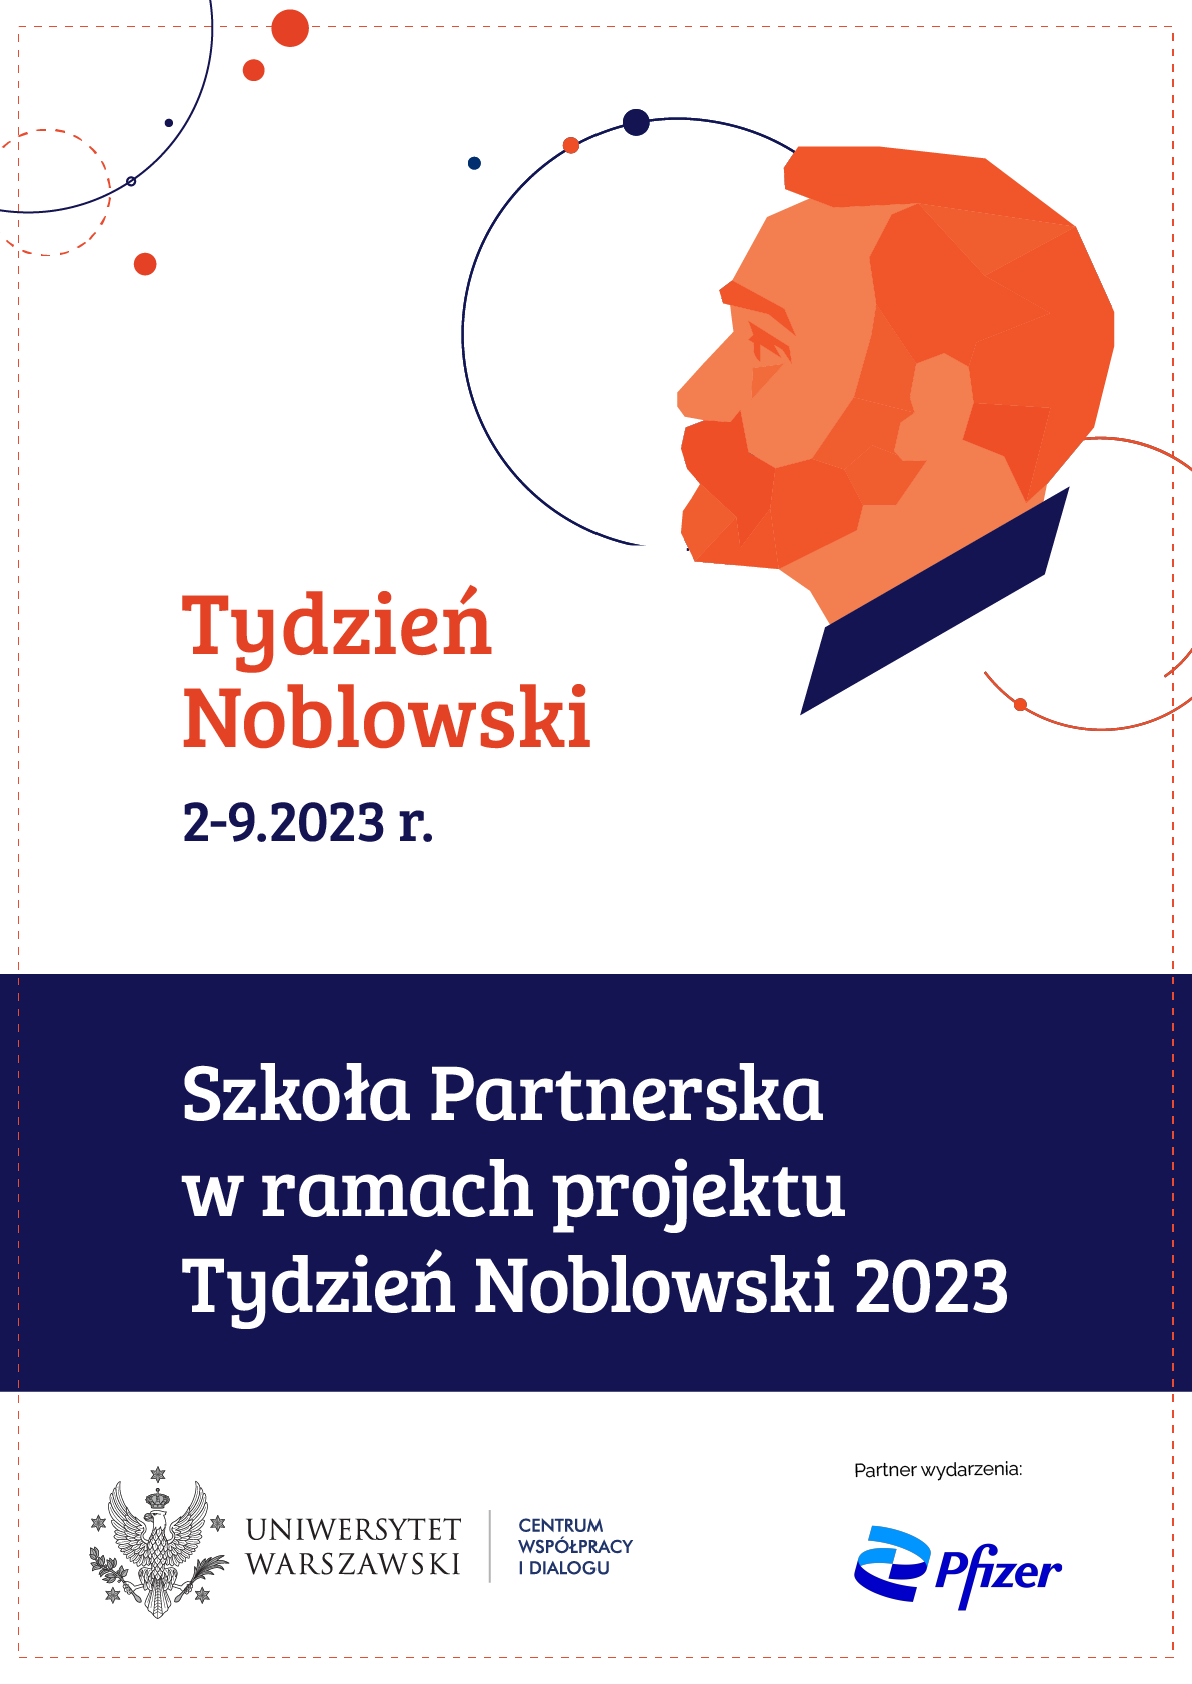 TN_2023___szkoła_partnerska_plakat.png (180 KB)